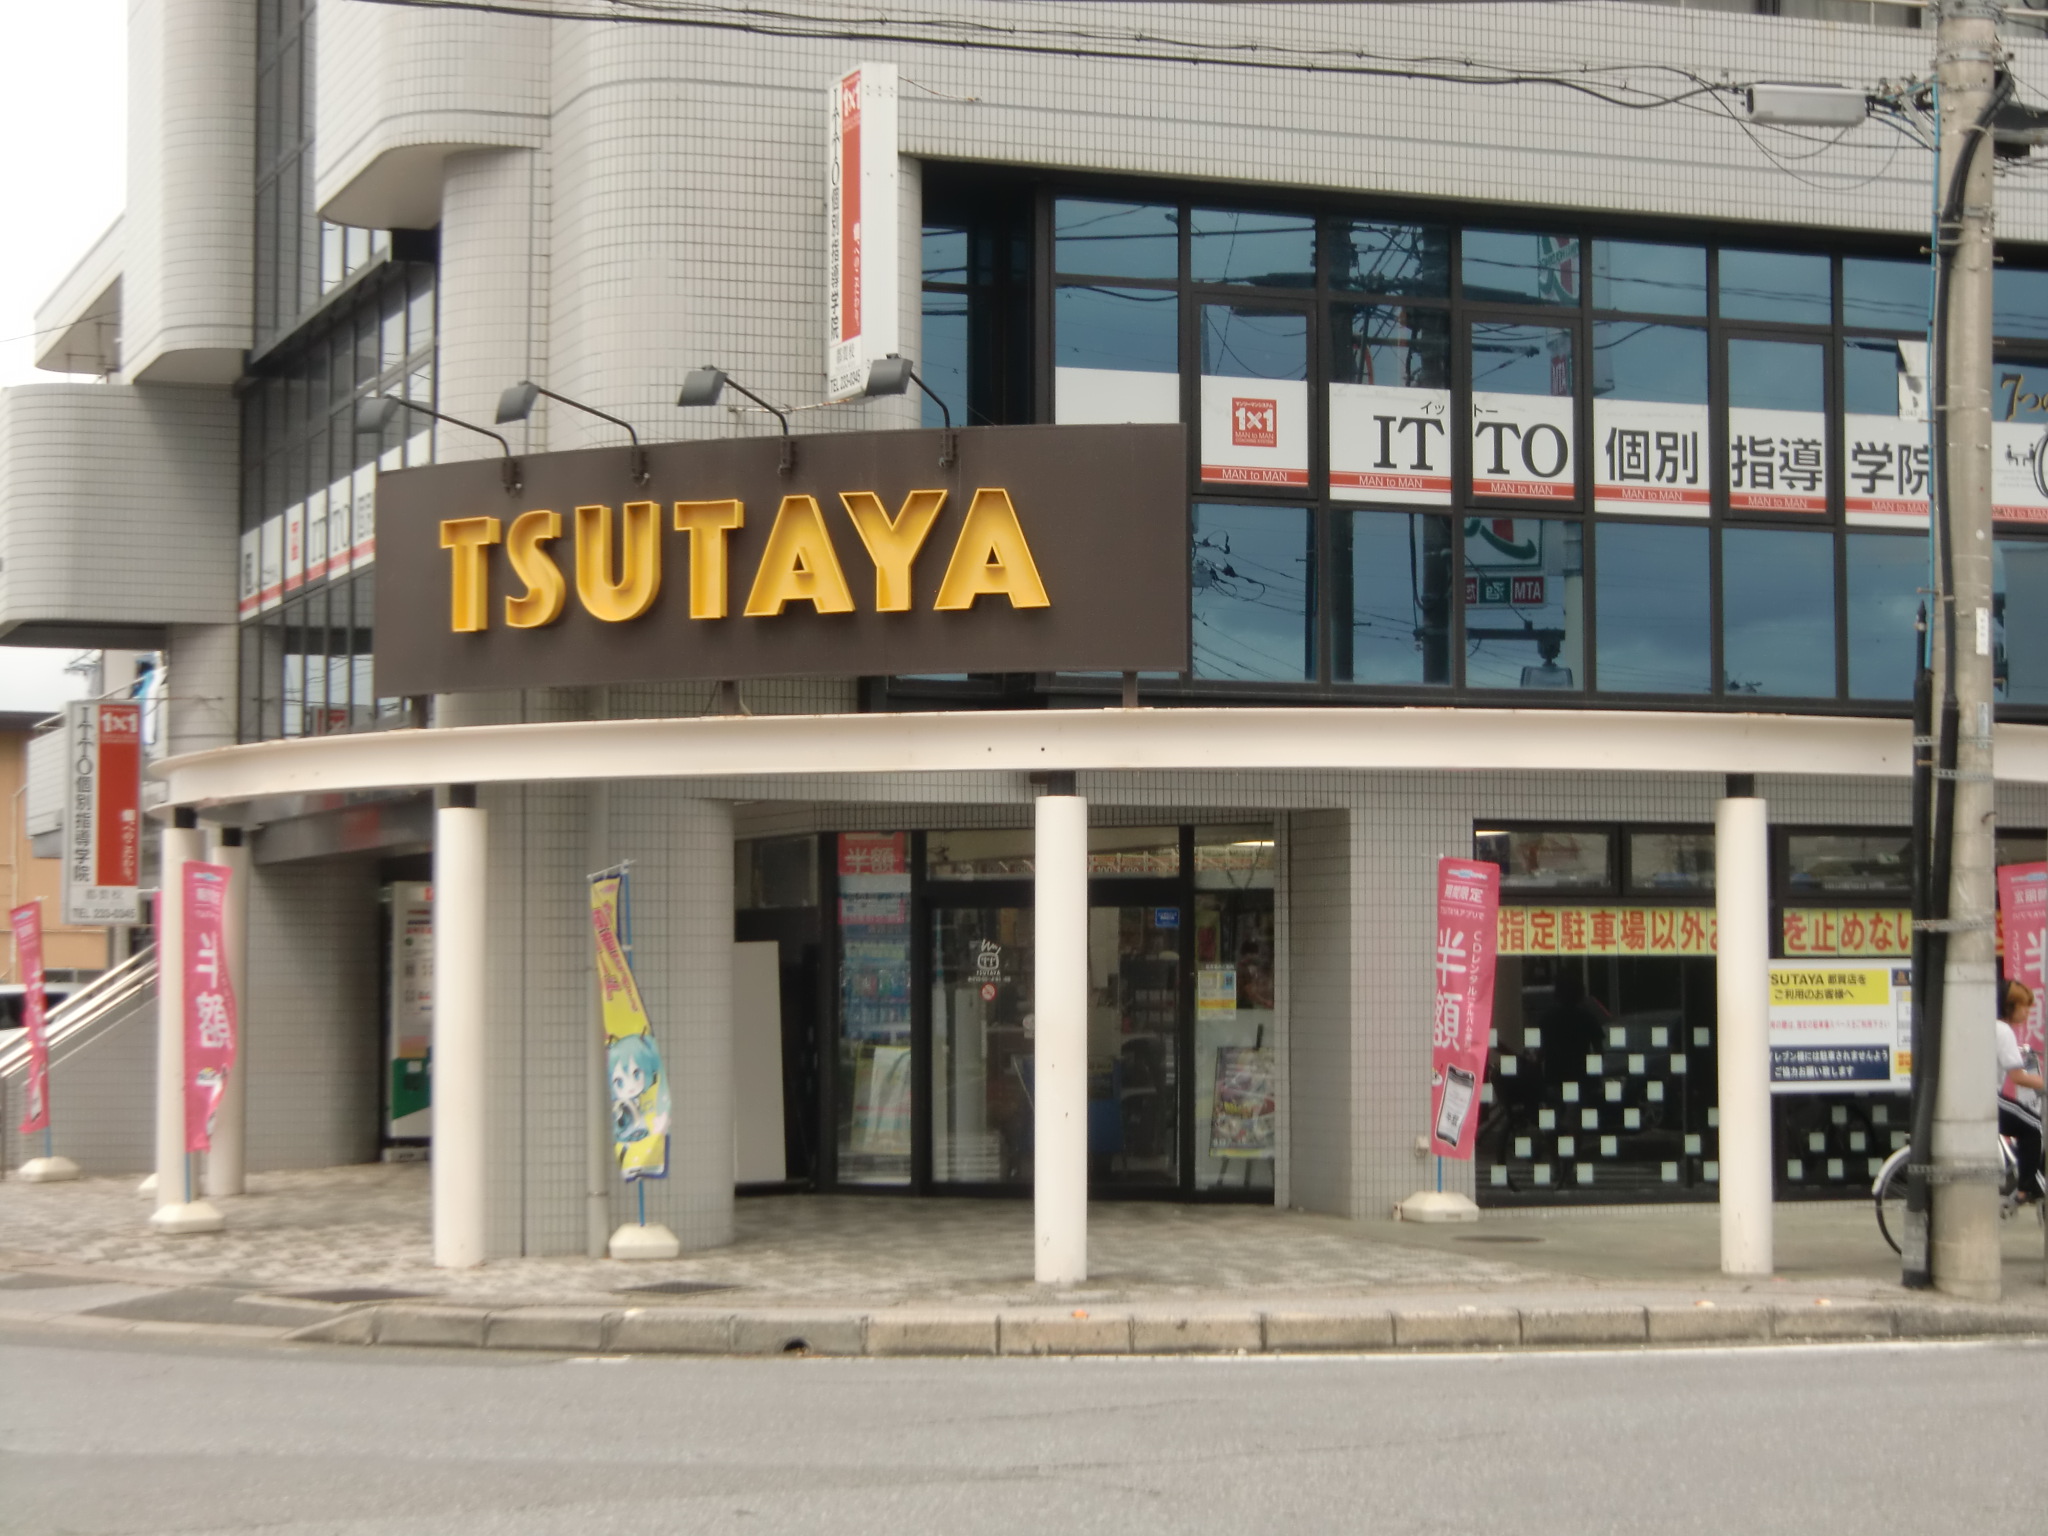 Rental video. TSUTAYA Tsuga shop 1073m up (video rental)